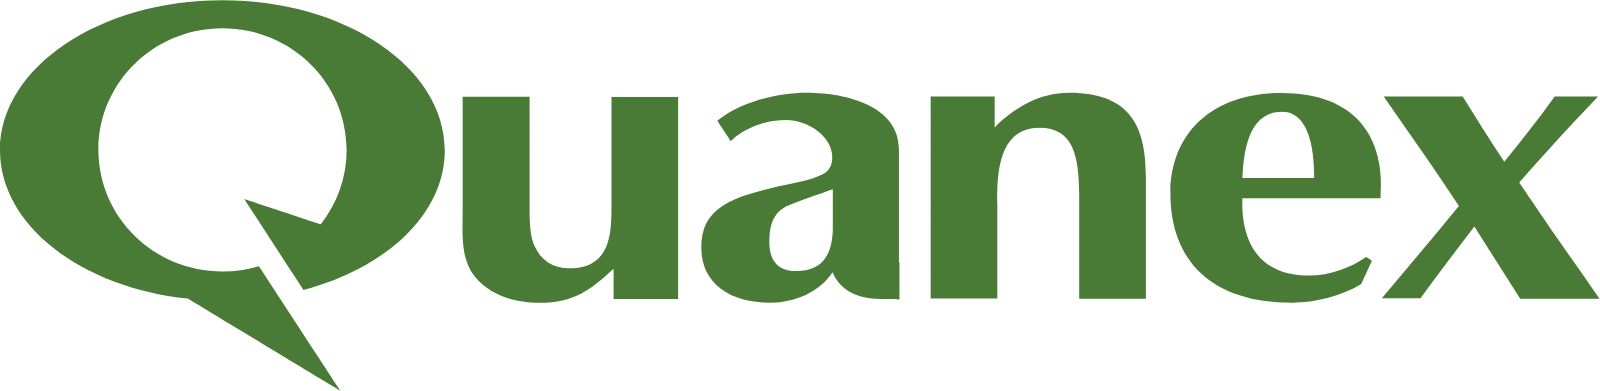 Quanex Building Products logo large (transparent PNG)